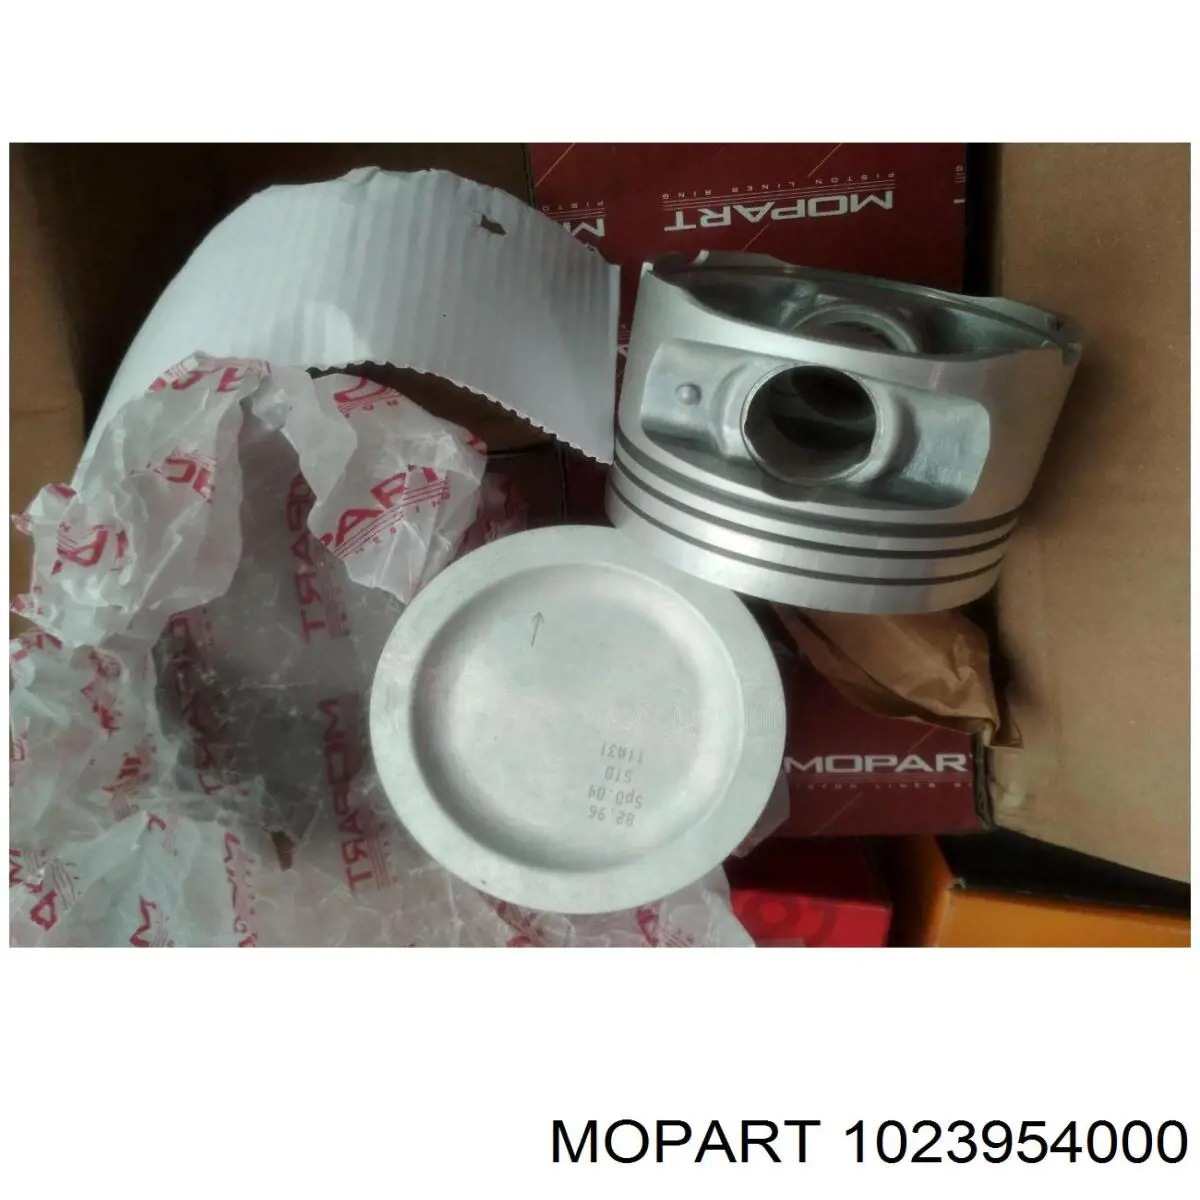 1023954000 Mopart